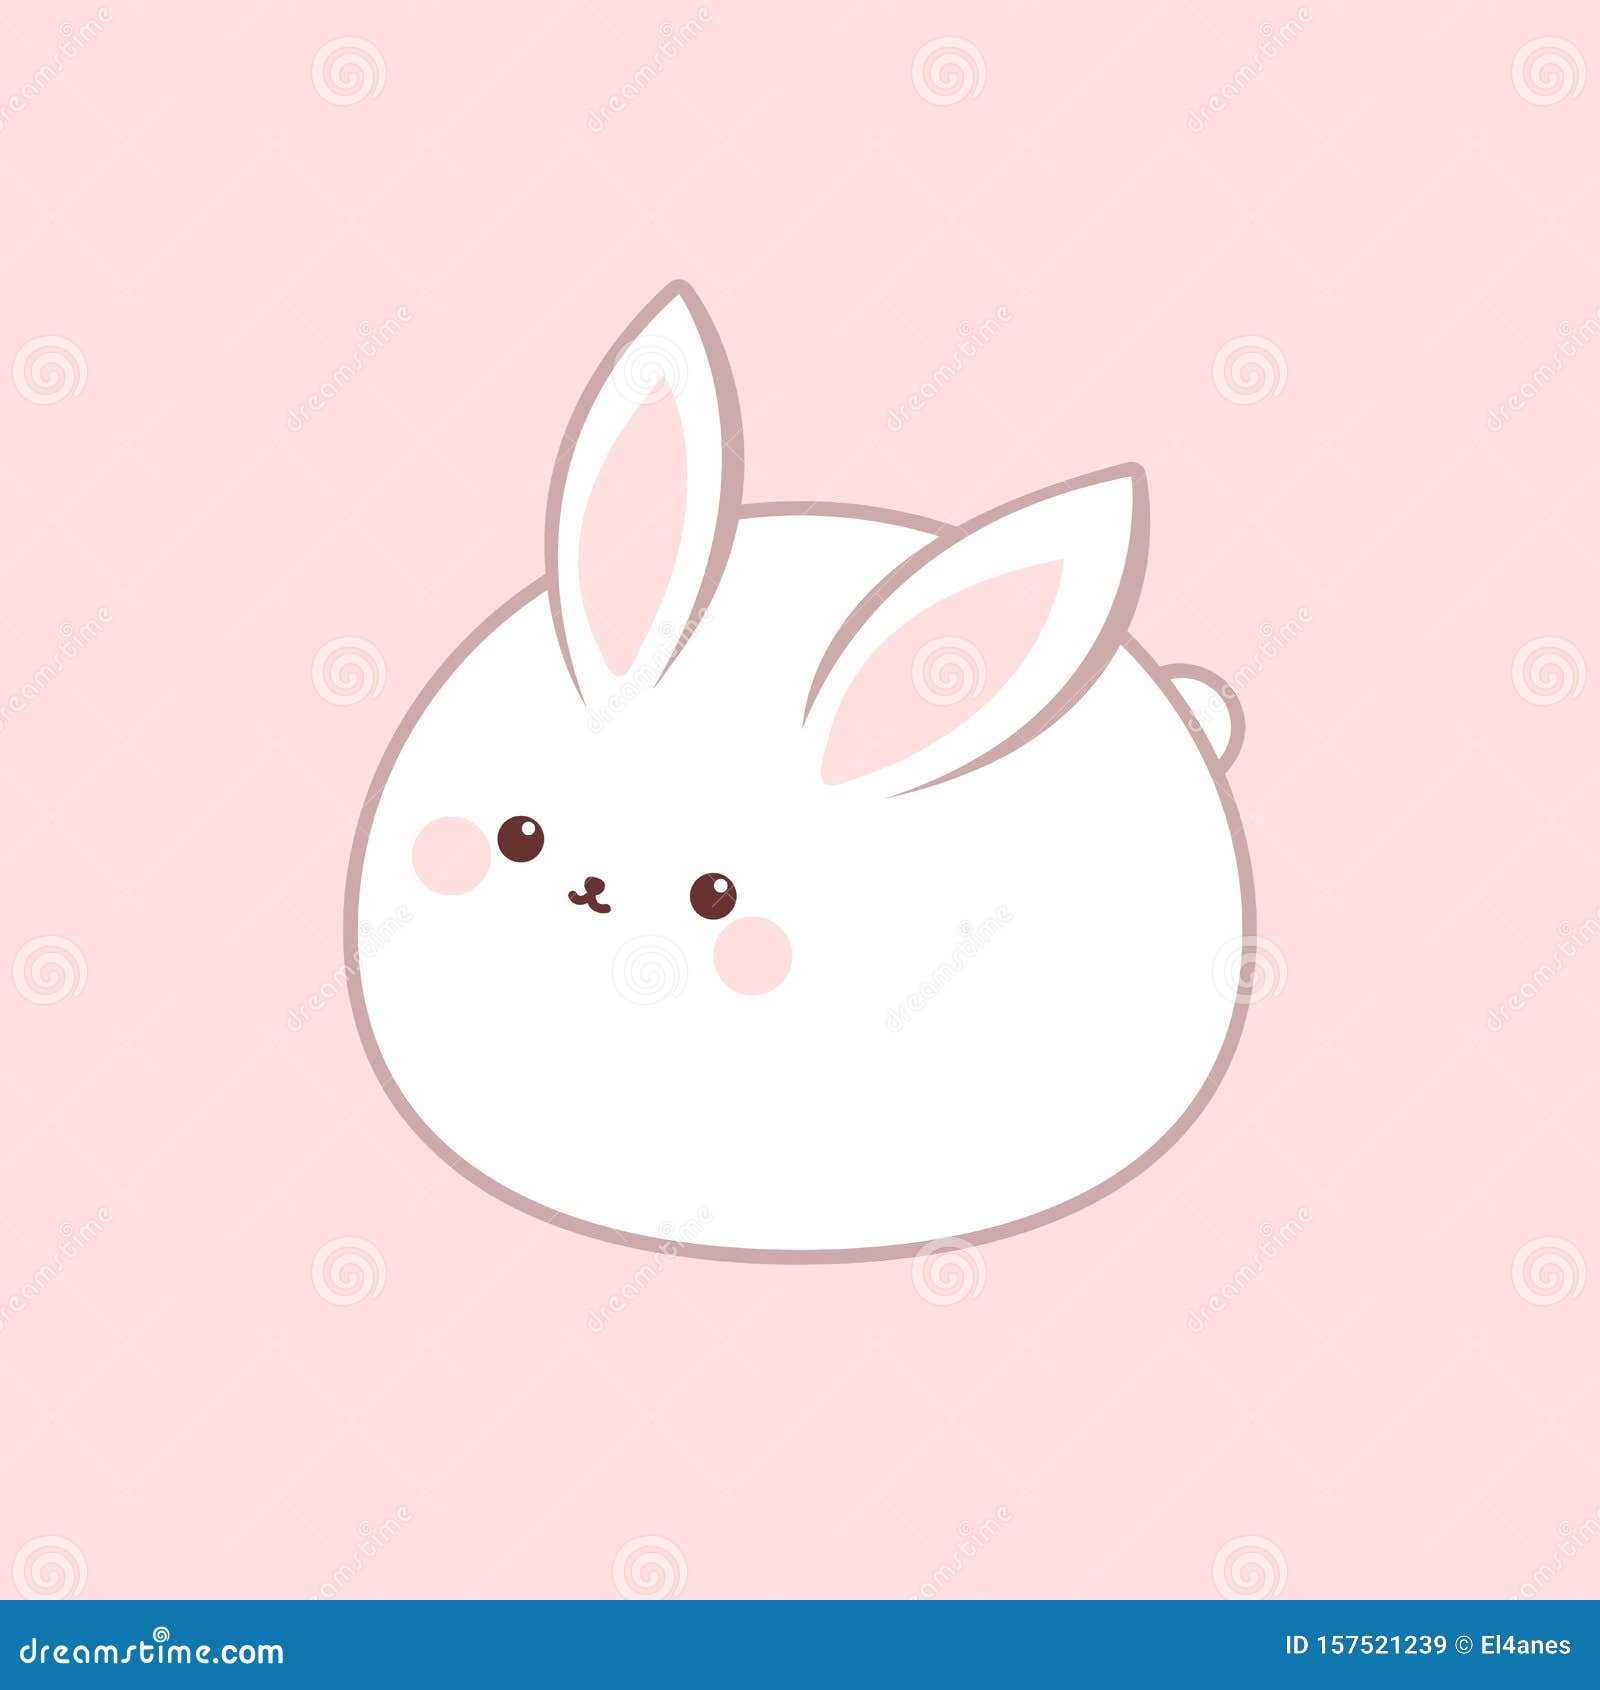 可爱的胖宠物兔子图片_蛙客网viwik.com